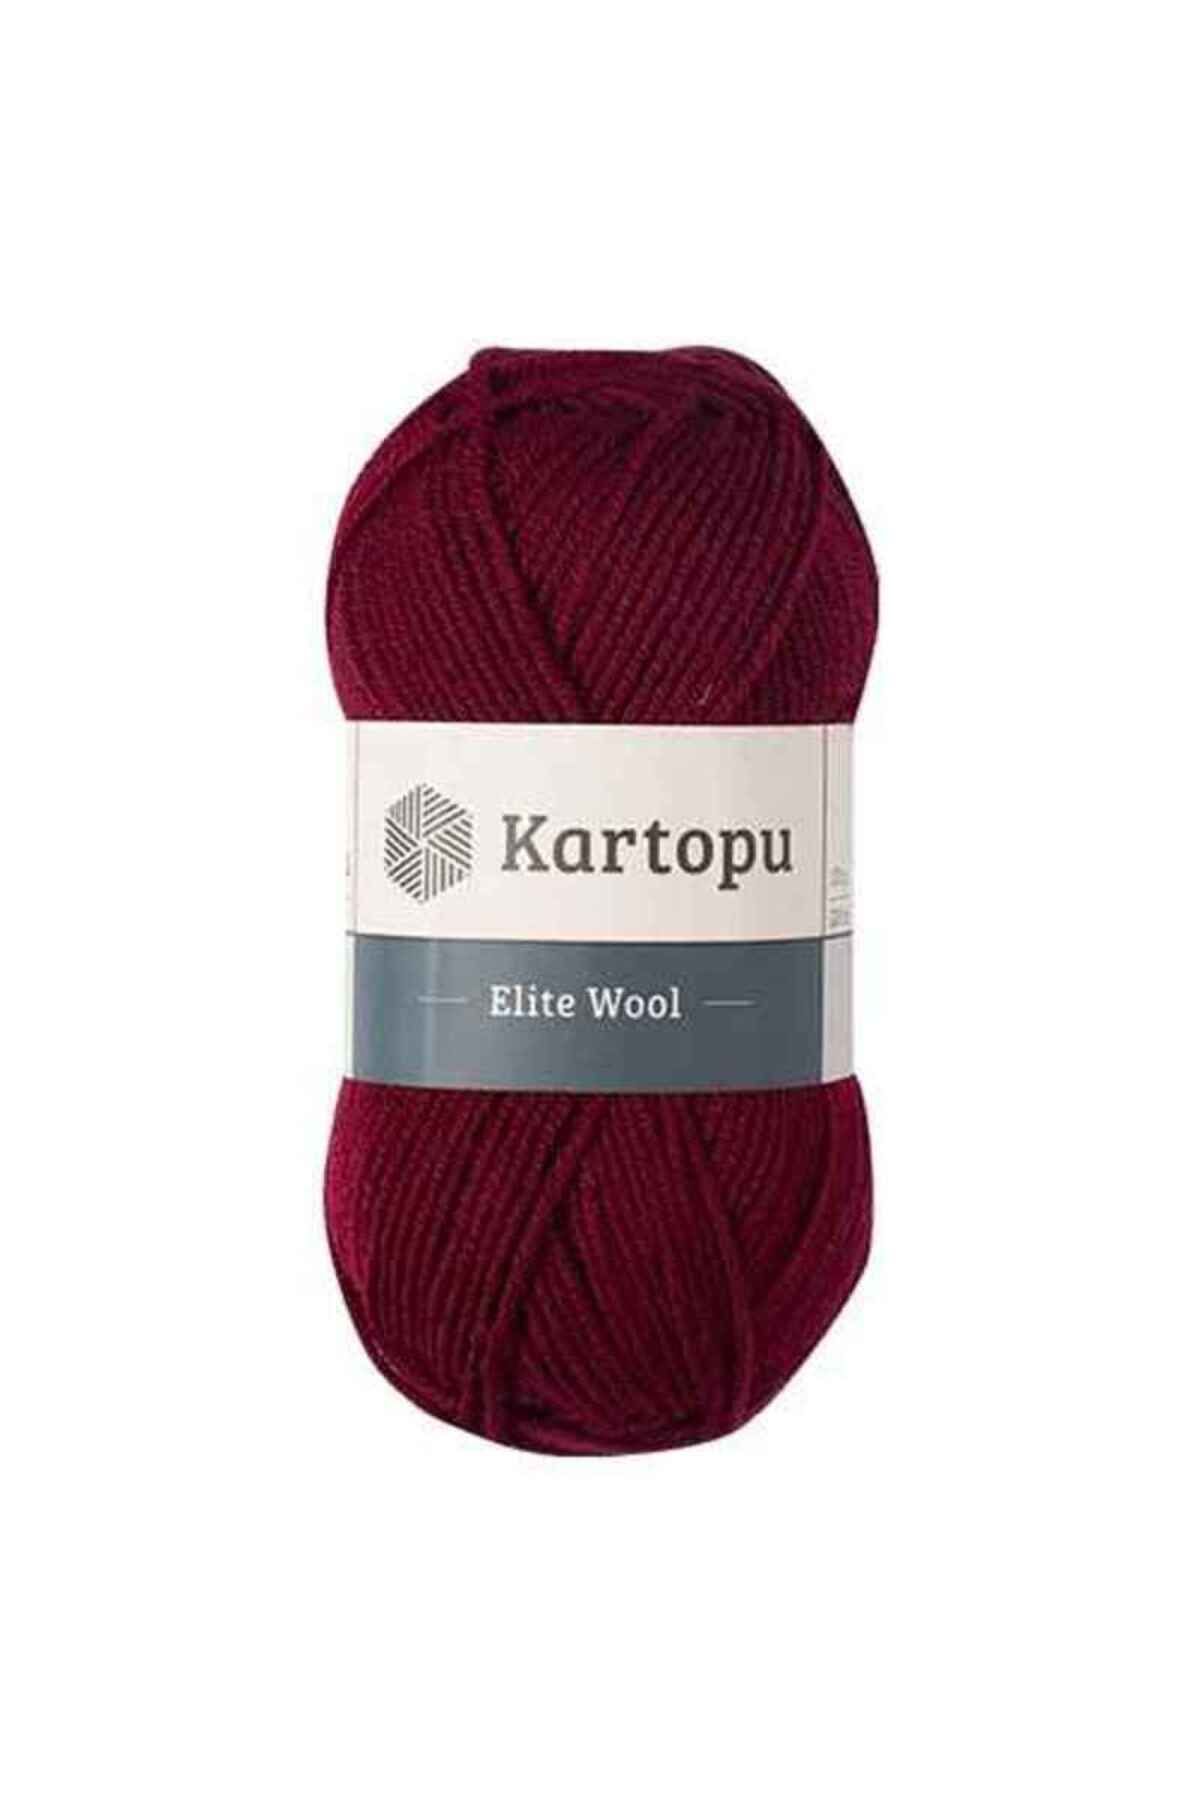 Kartopu Elite Wool K110 Bordo %49 Yün Örgü İpi Kazak & Süveter & Hırka & Yelek Kışlık Örgü İpi